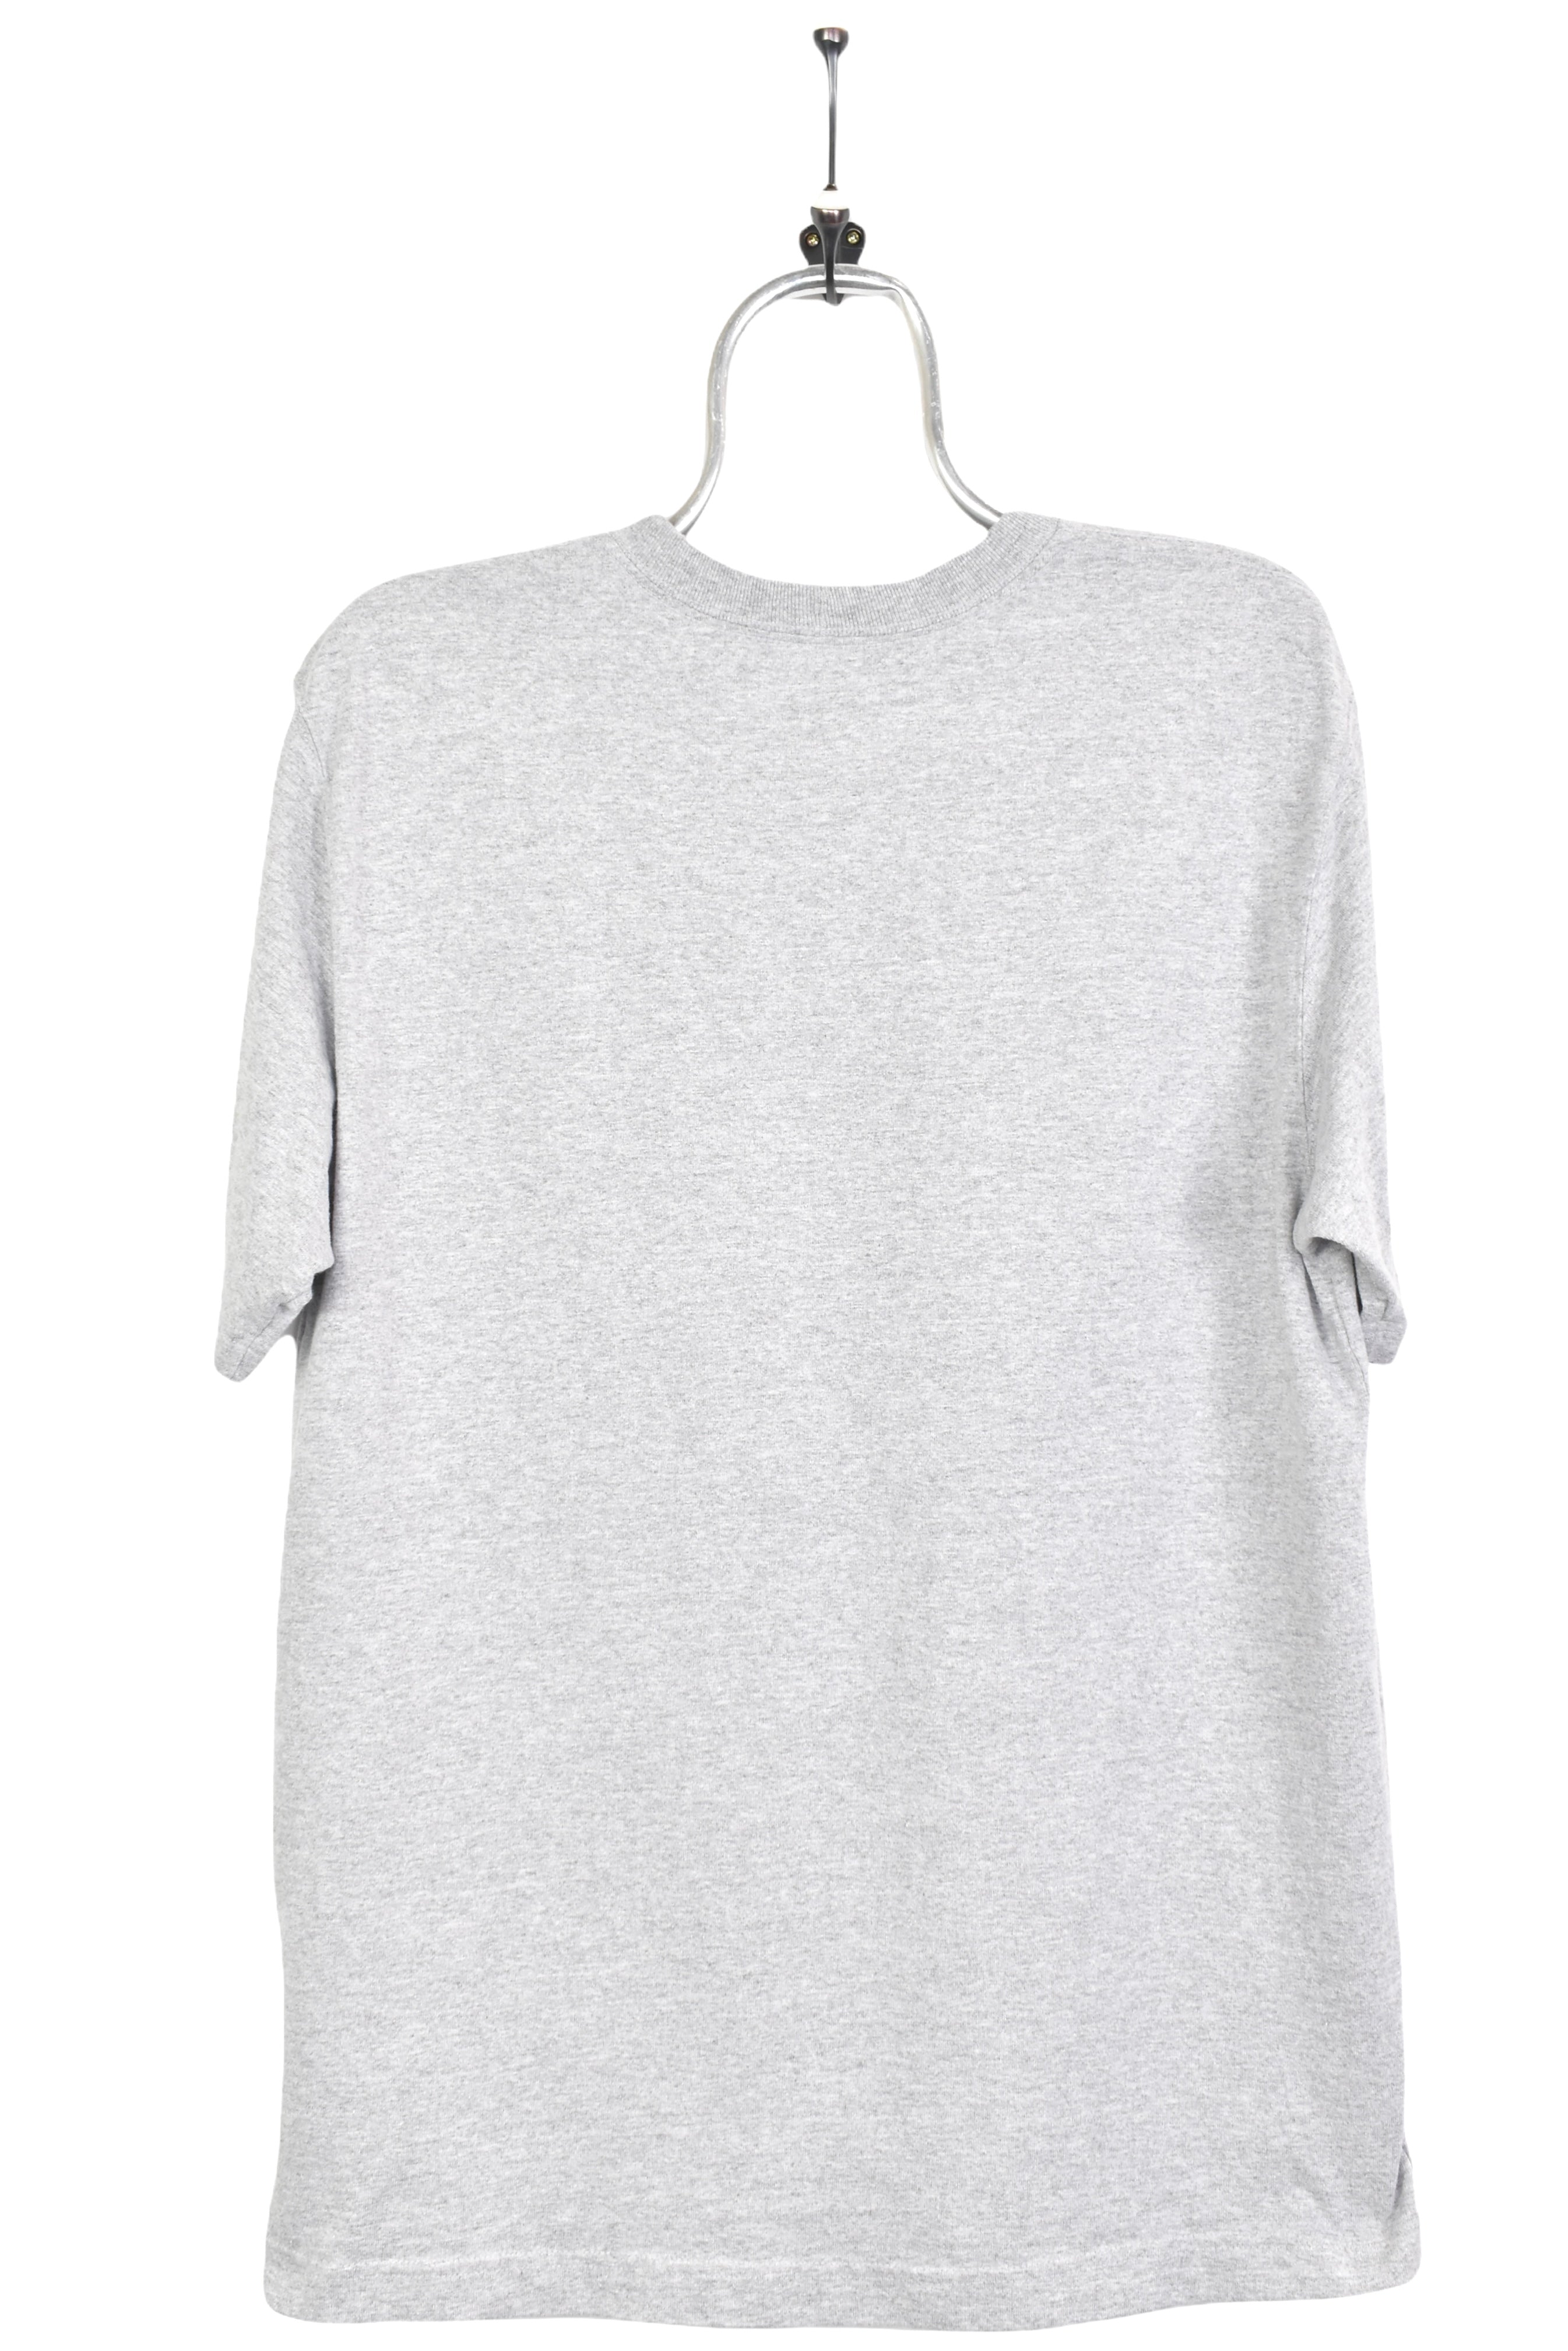 Vintage Carhartt grey T-Shirt | Medium CARHARTT